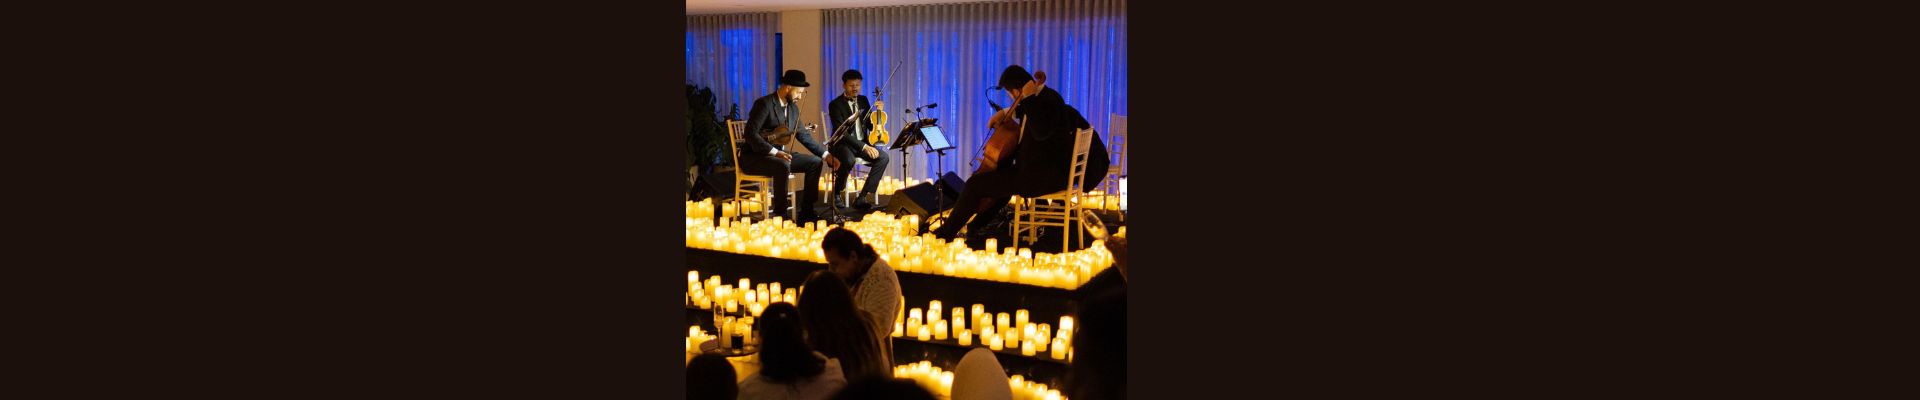 ‘Candlelight’ faz concerto exclusivo à luz de velas no centro de Florianópolis